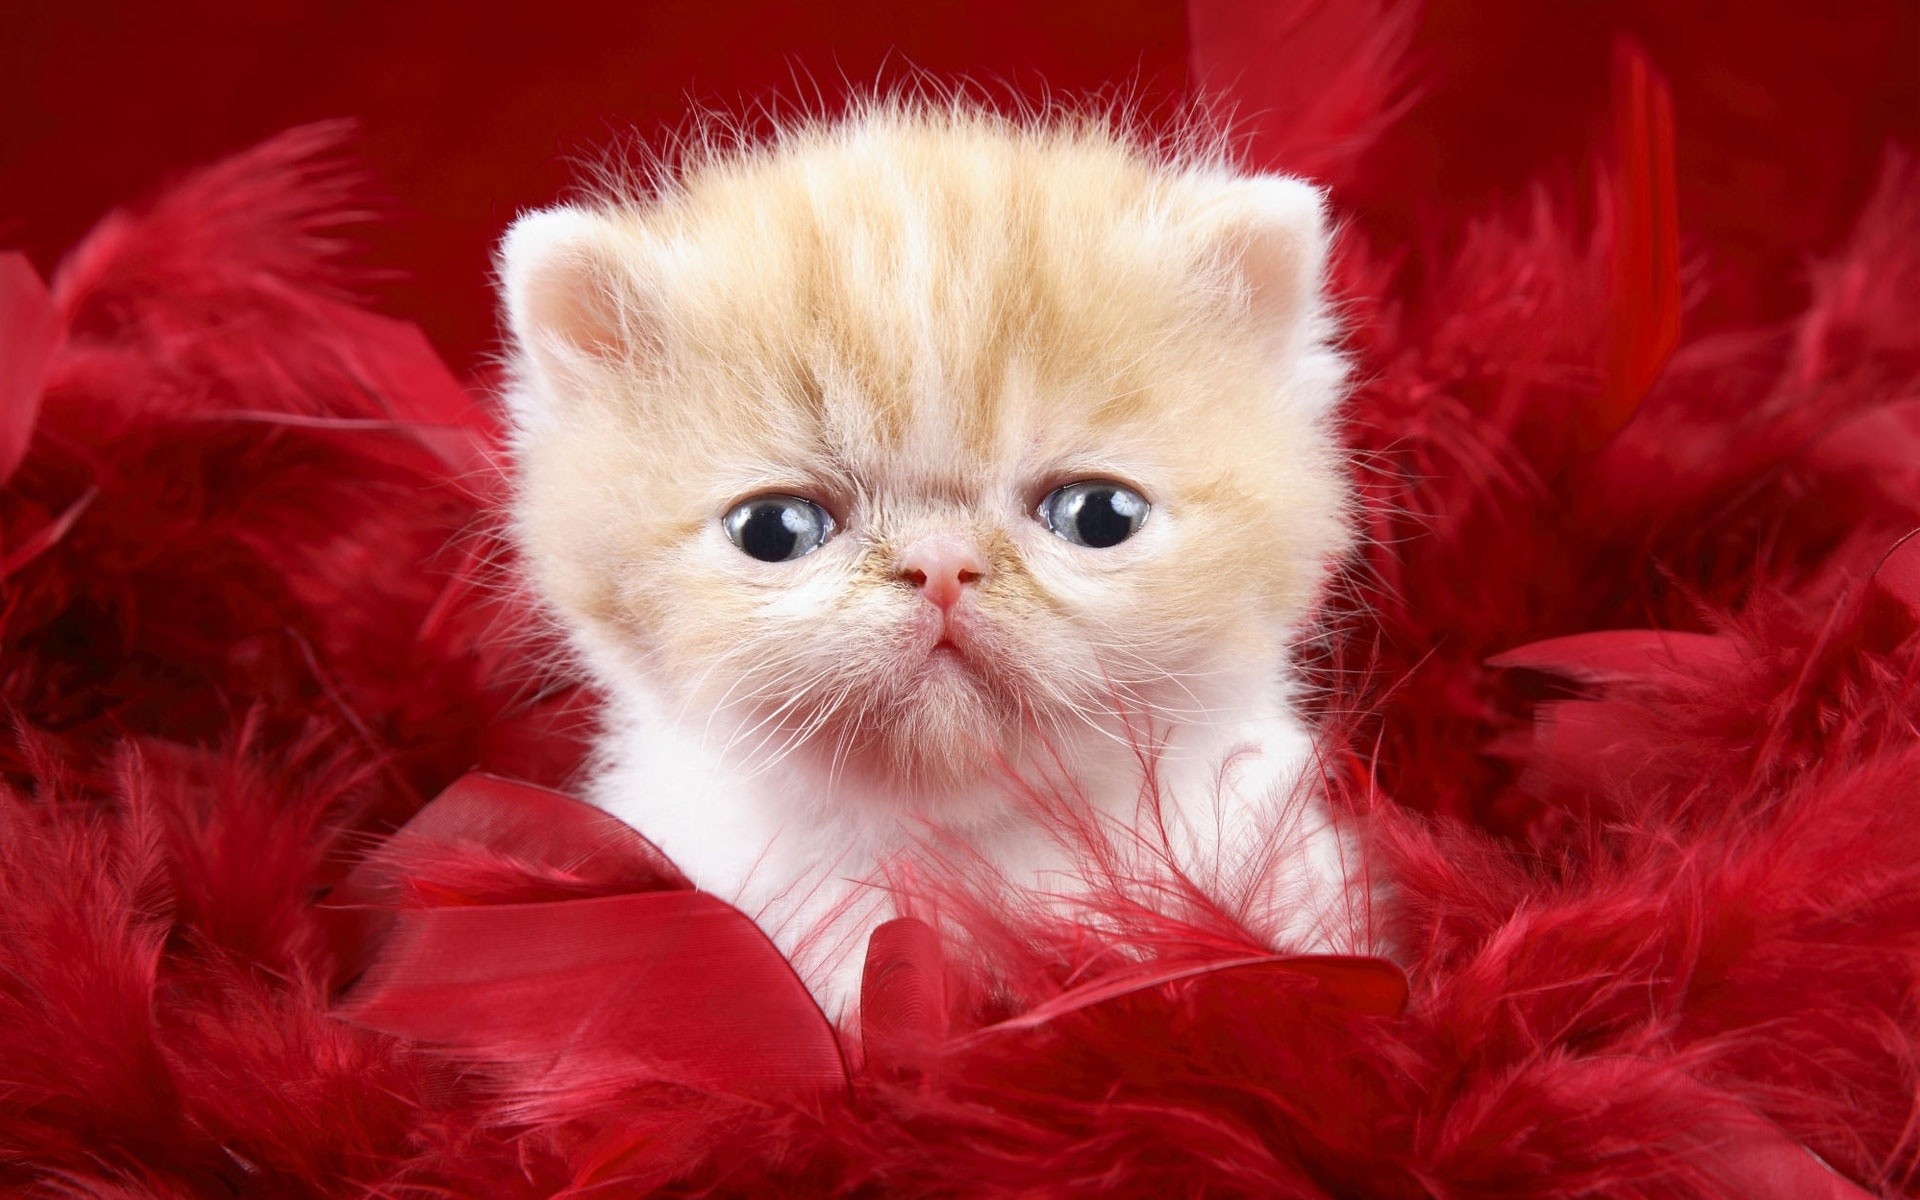 cats, animals, derp, kittens - desktop wallpaper